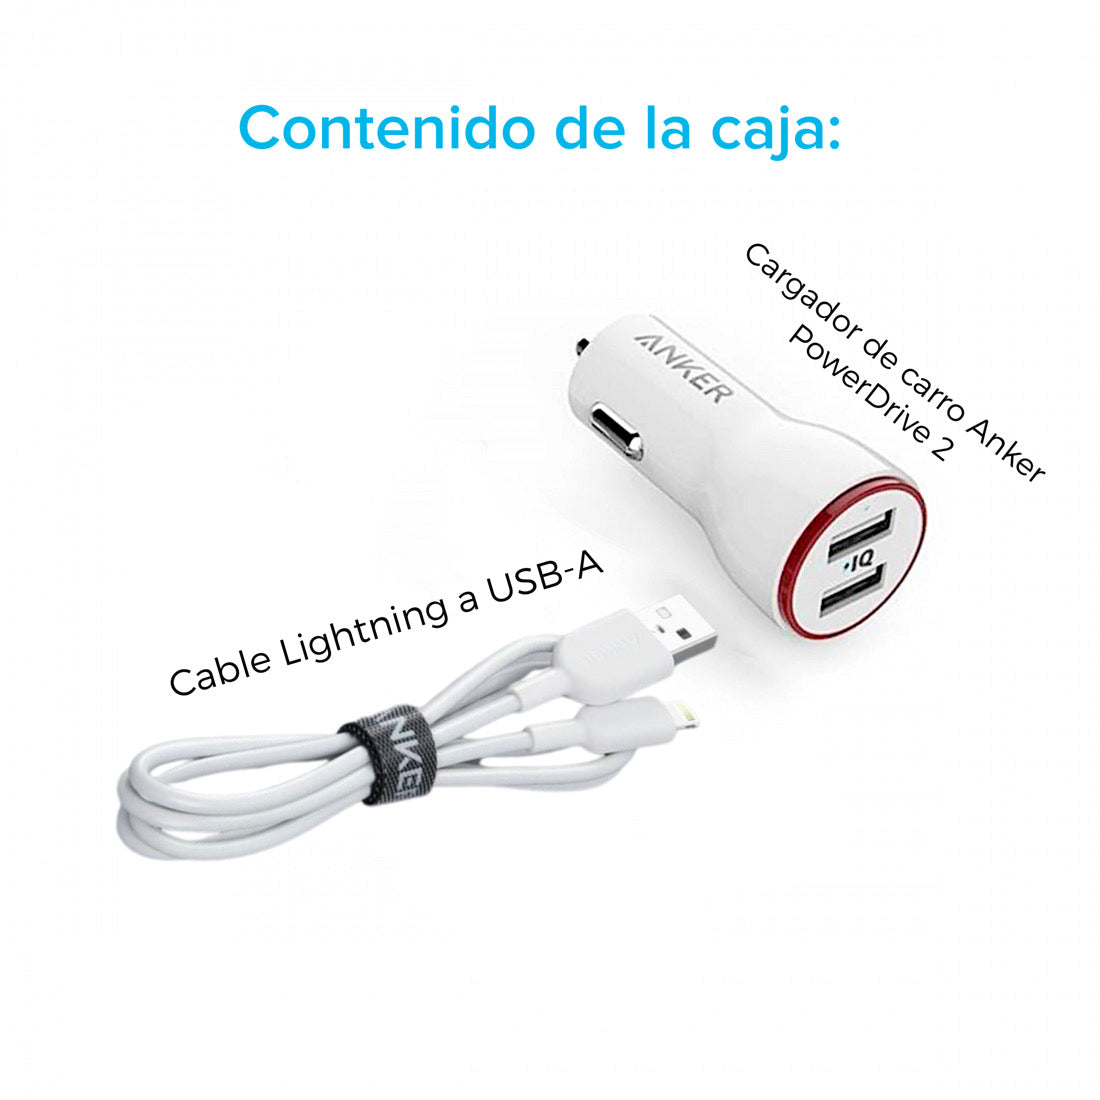 Cargador de carro Anker PowerDrive 2 USB-A + Cable Lightning a USB-A